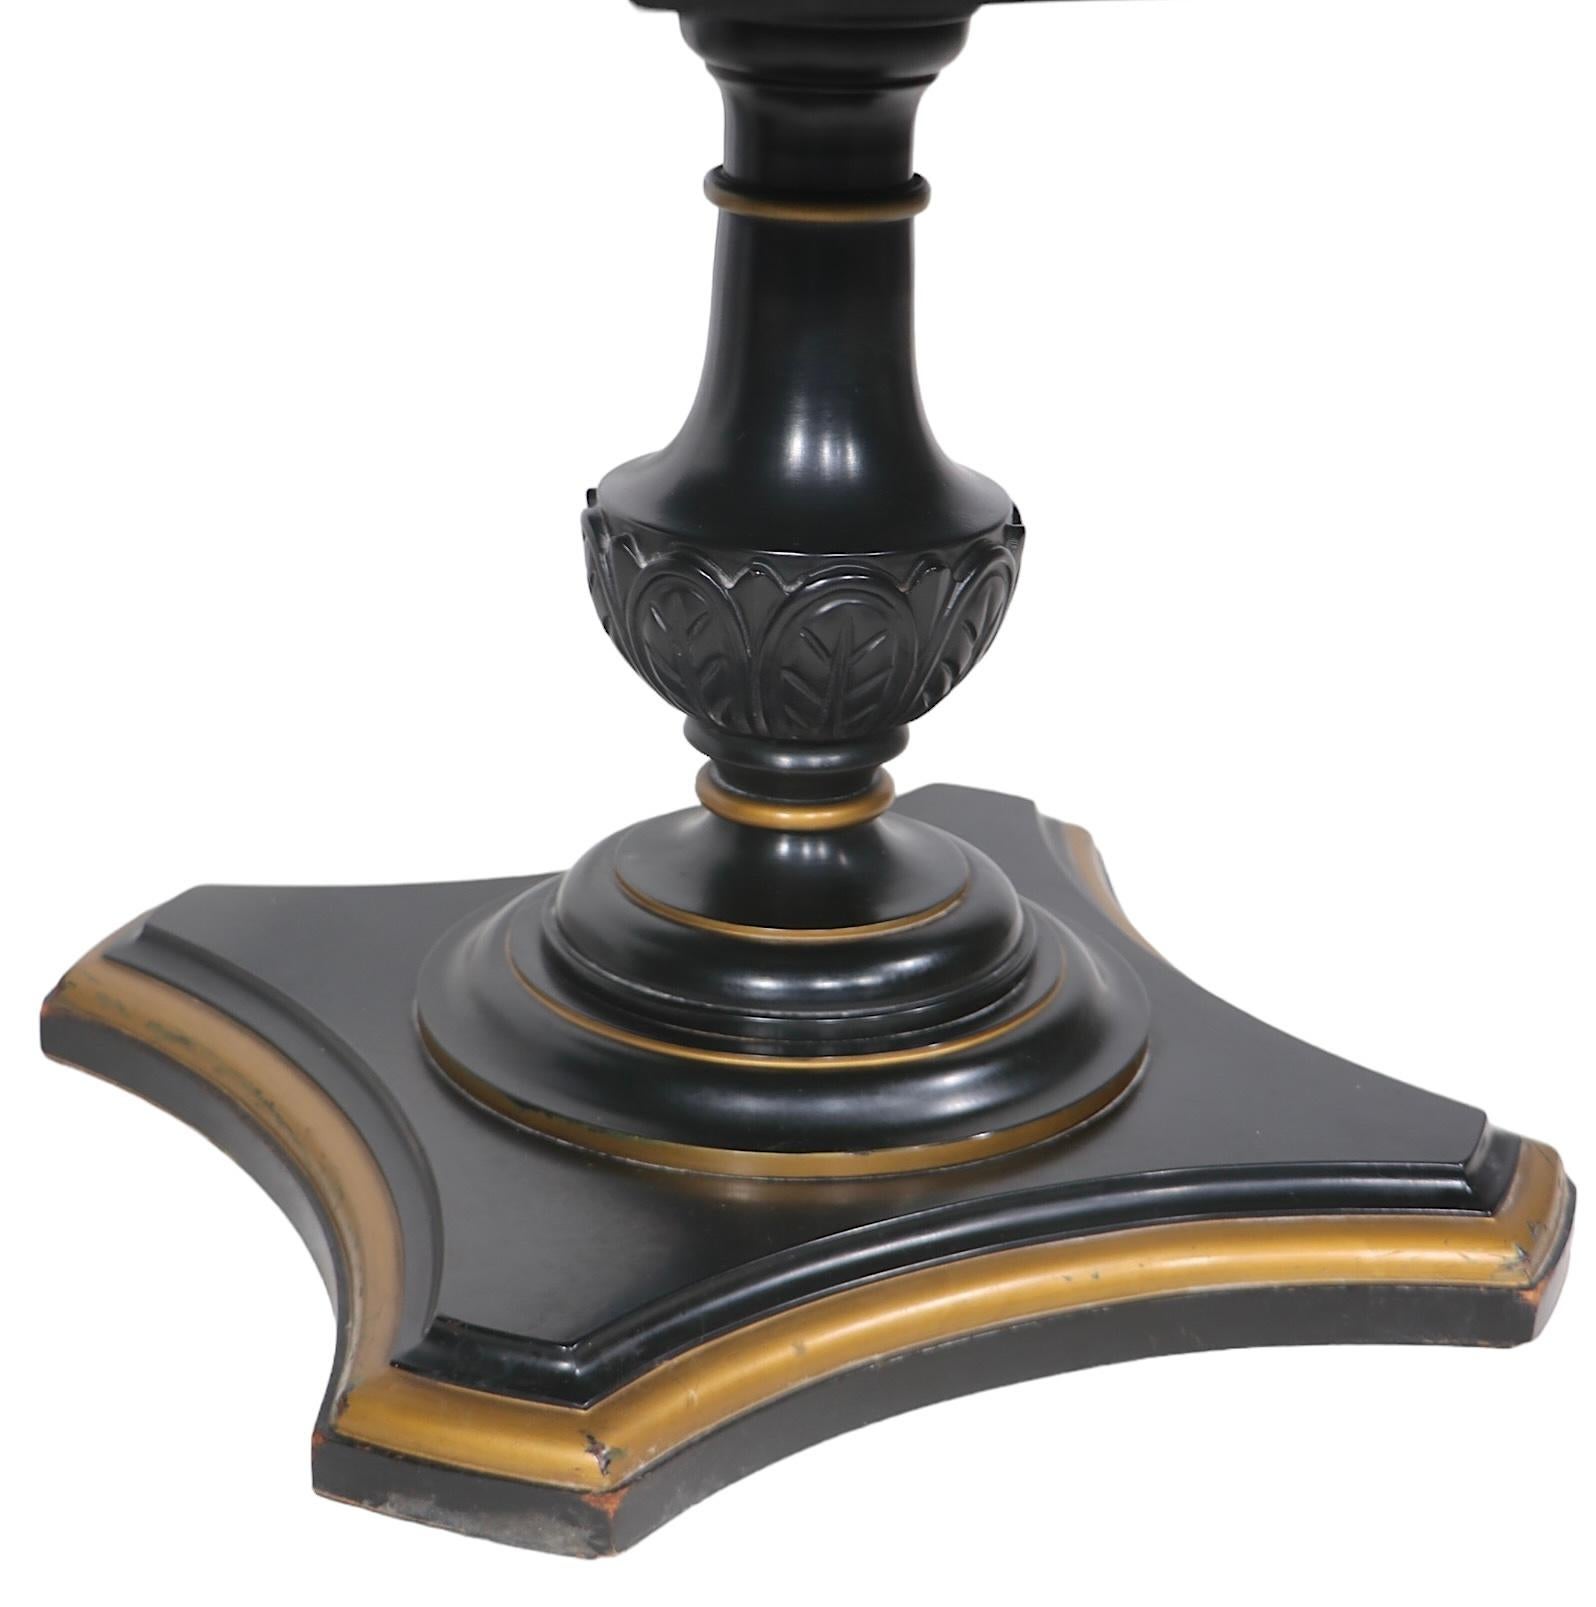 Paire de tables d'appoint de style néoclassique, hollywood regency, avec de beaux plateaux en marbre épais, reposant sur des socles en bois sculpté à la main, peints en noir et ornés d'une bordure dorée. Les tables peuvent être utilisées comme